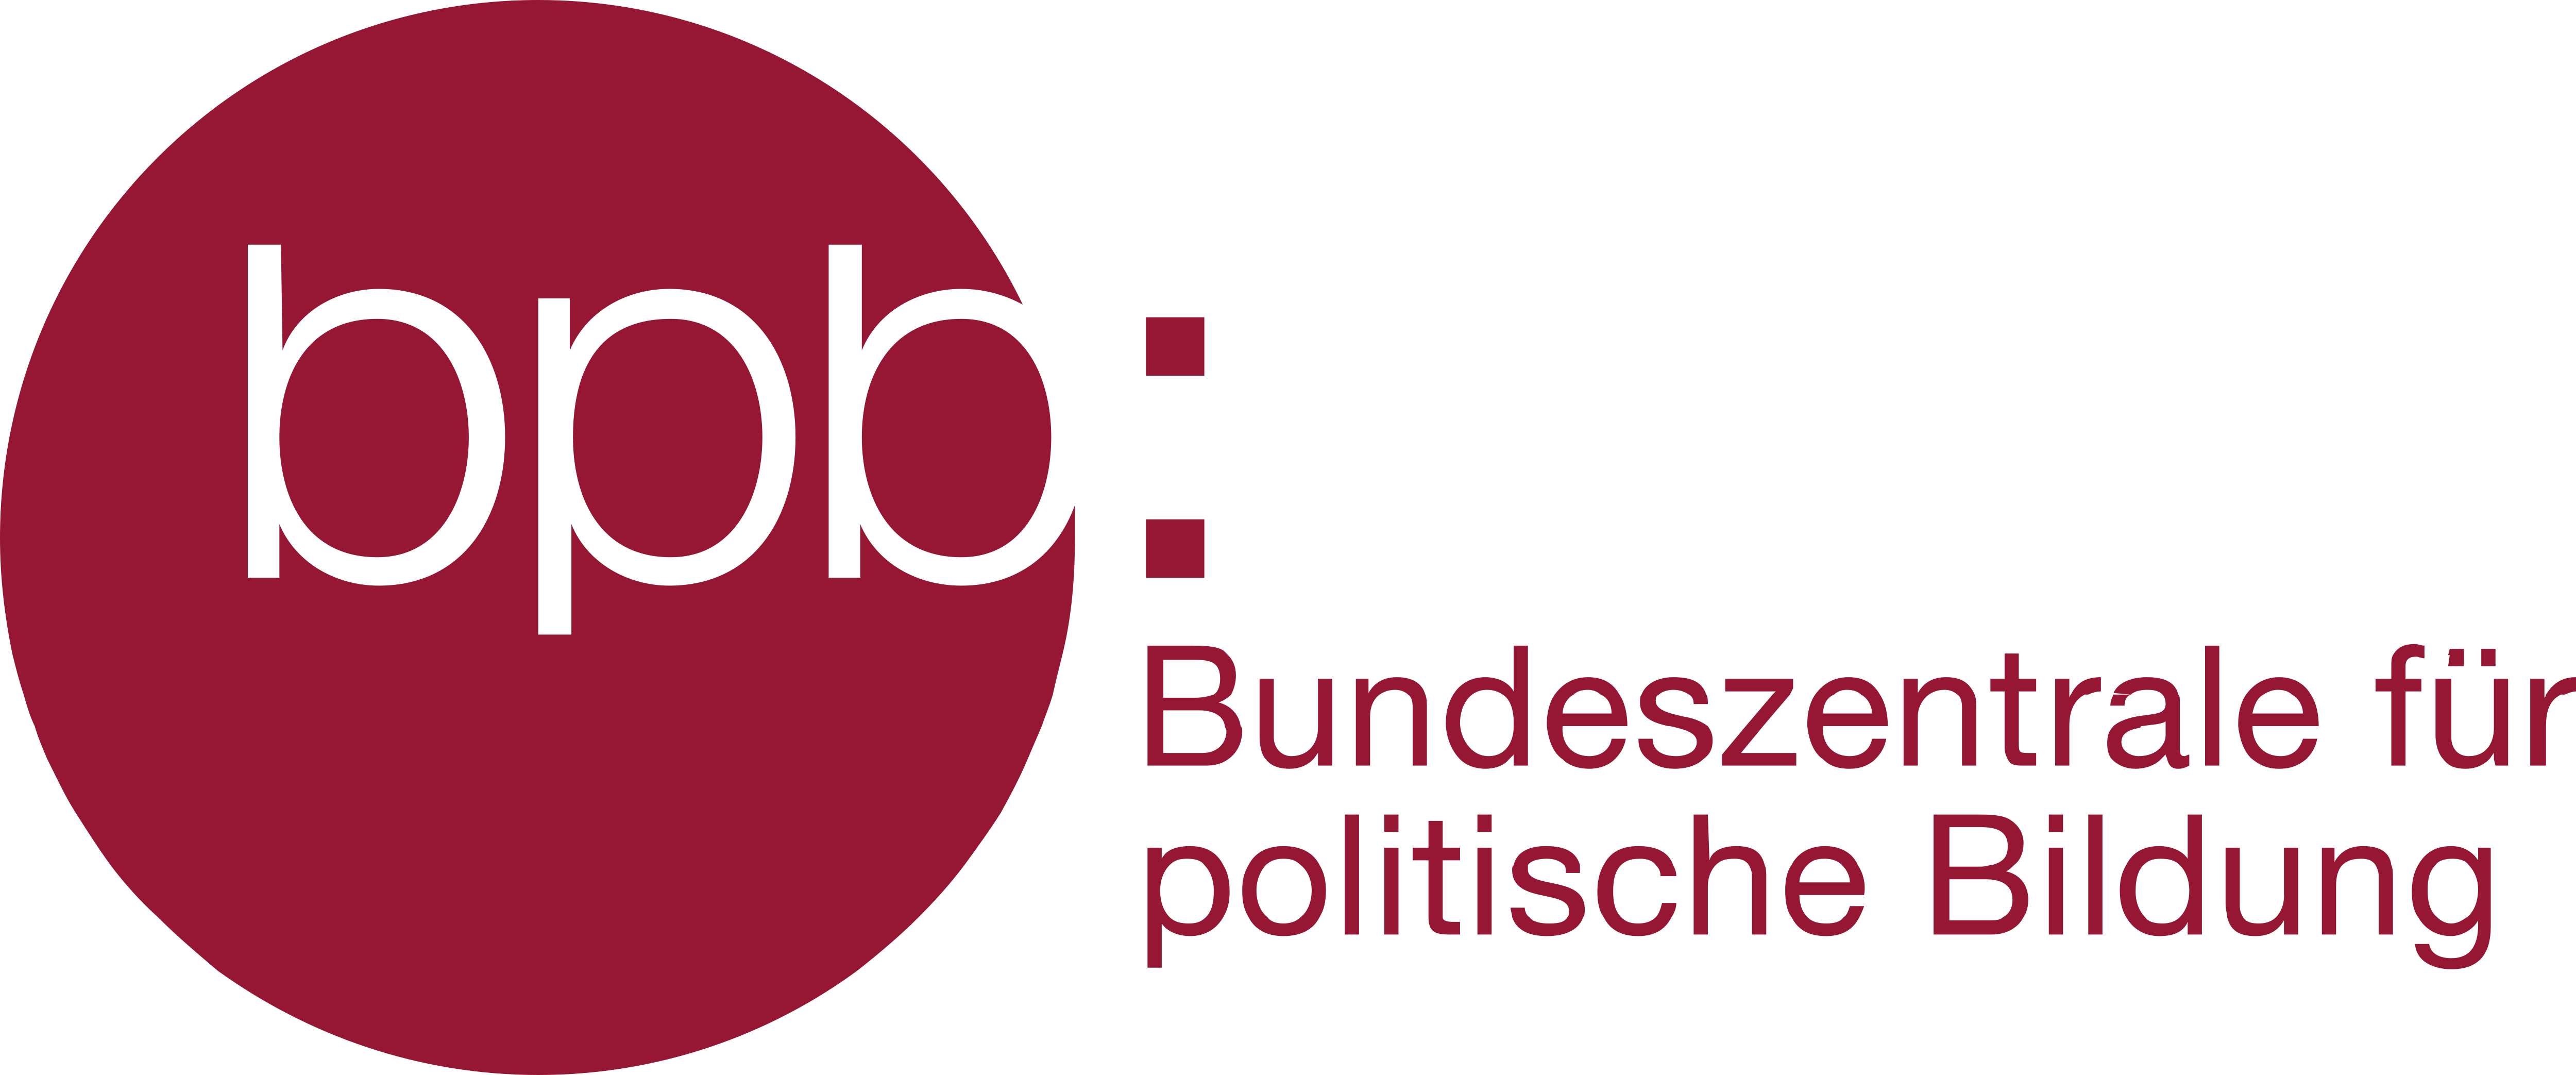 Die_Bundeszentrale_Fuer_Politische_Bildung_Logo